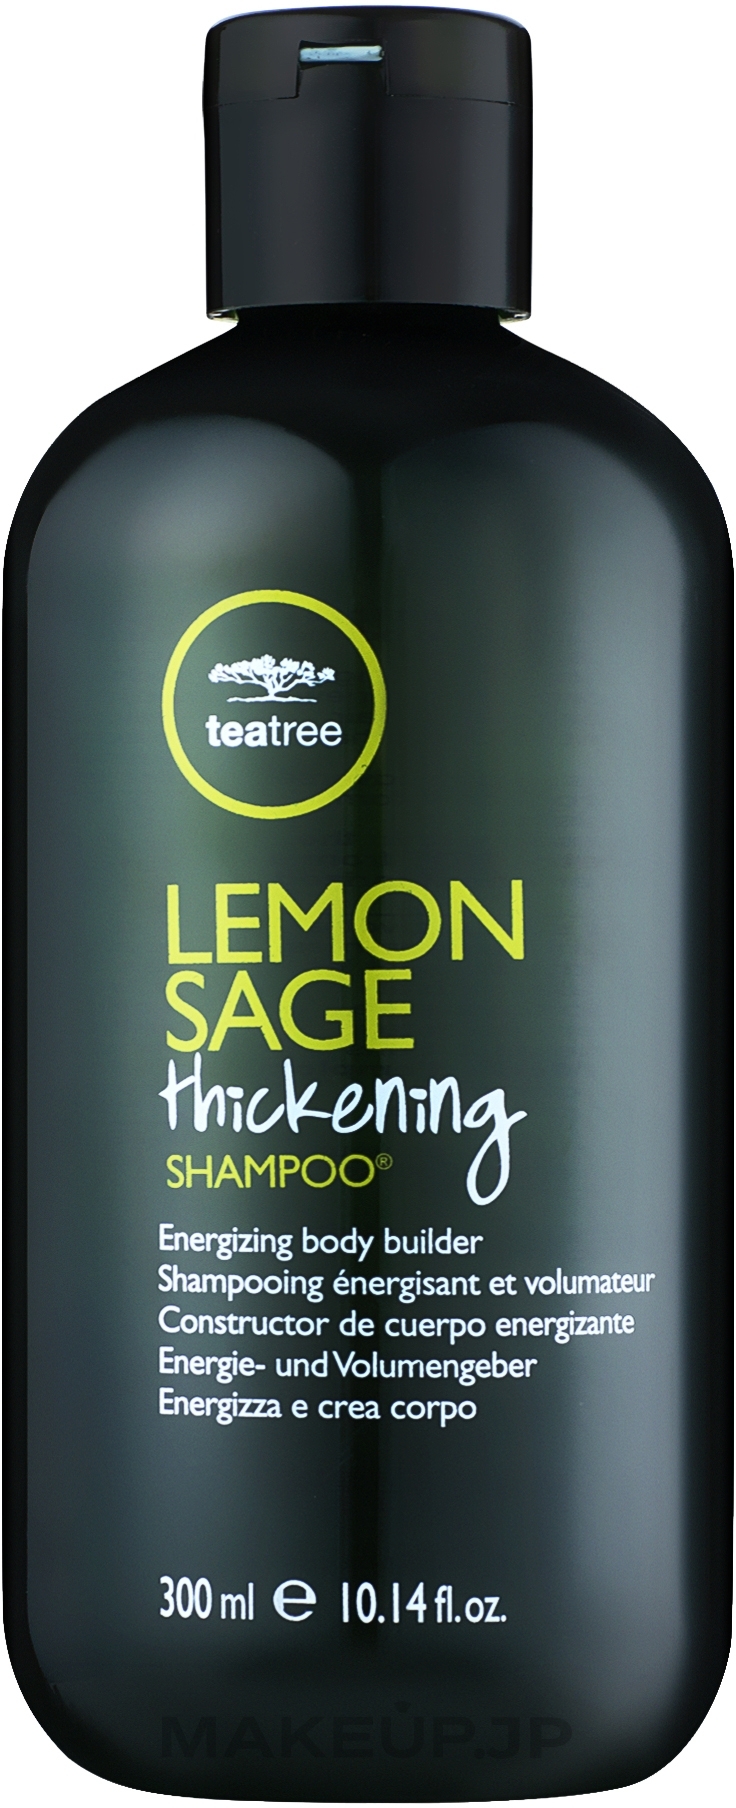 Tea Tree Extract, Lemon & Sage Shampoo - Paul Mitchell Tea Tree Lemon Sage Thickening Shampoo — photo 300 ml